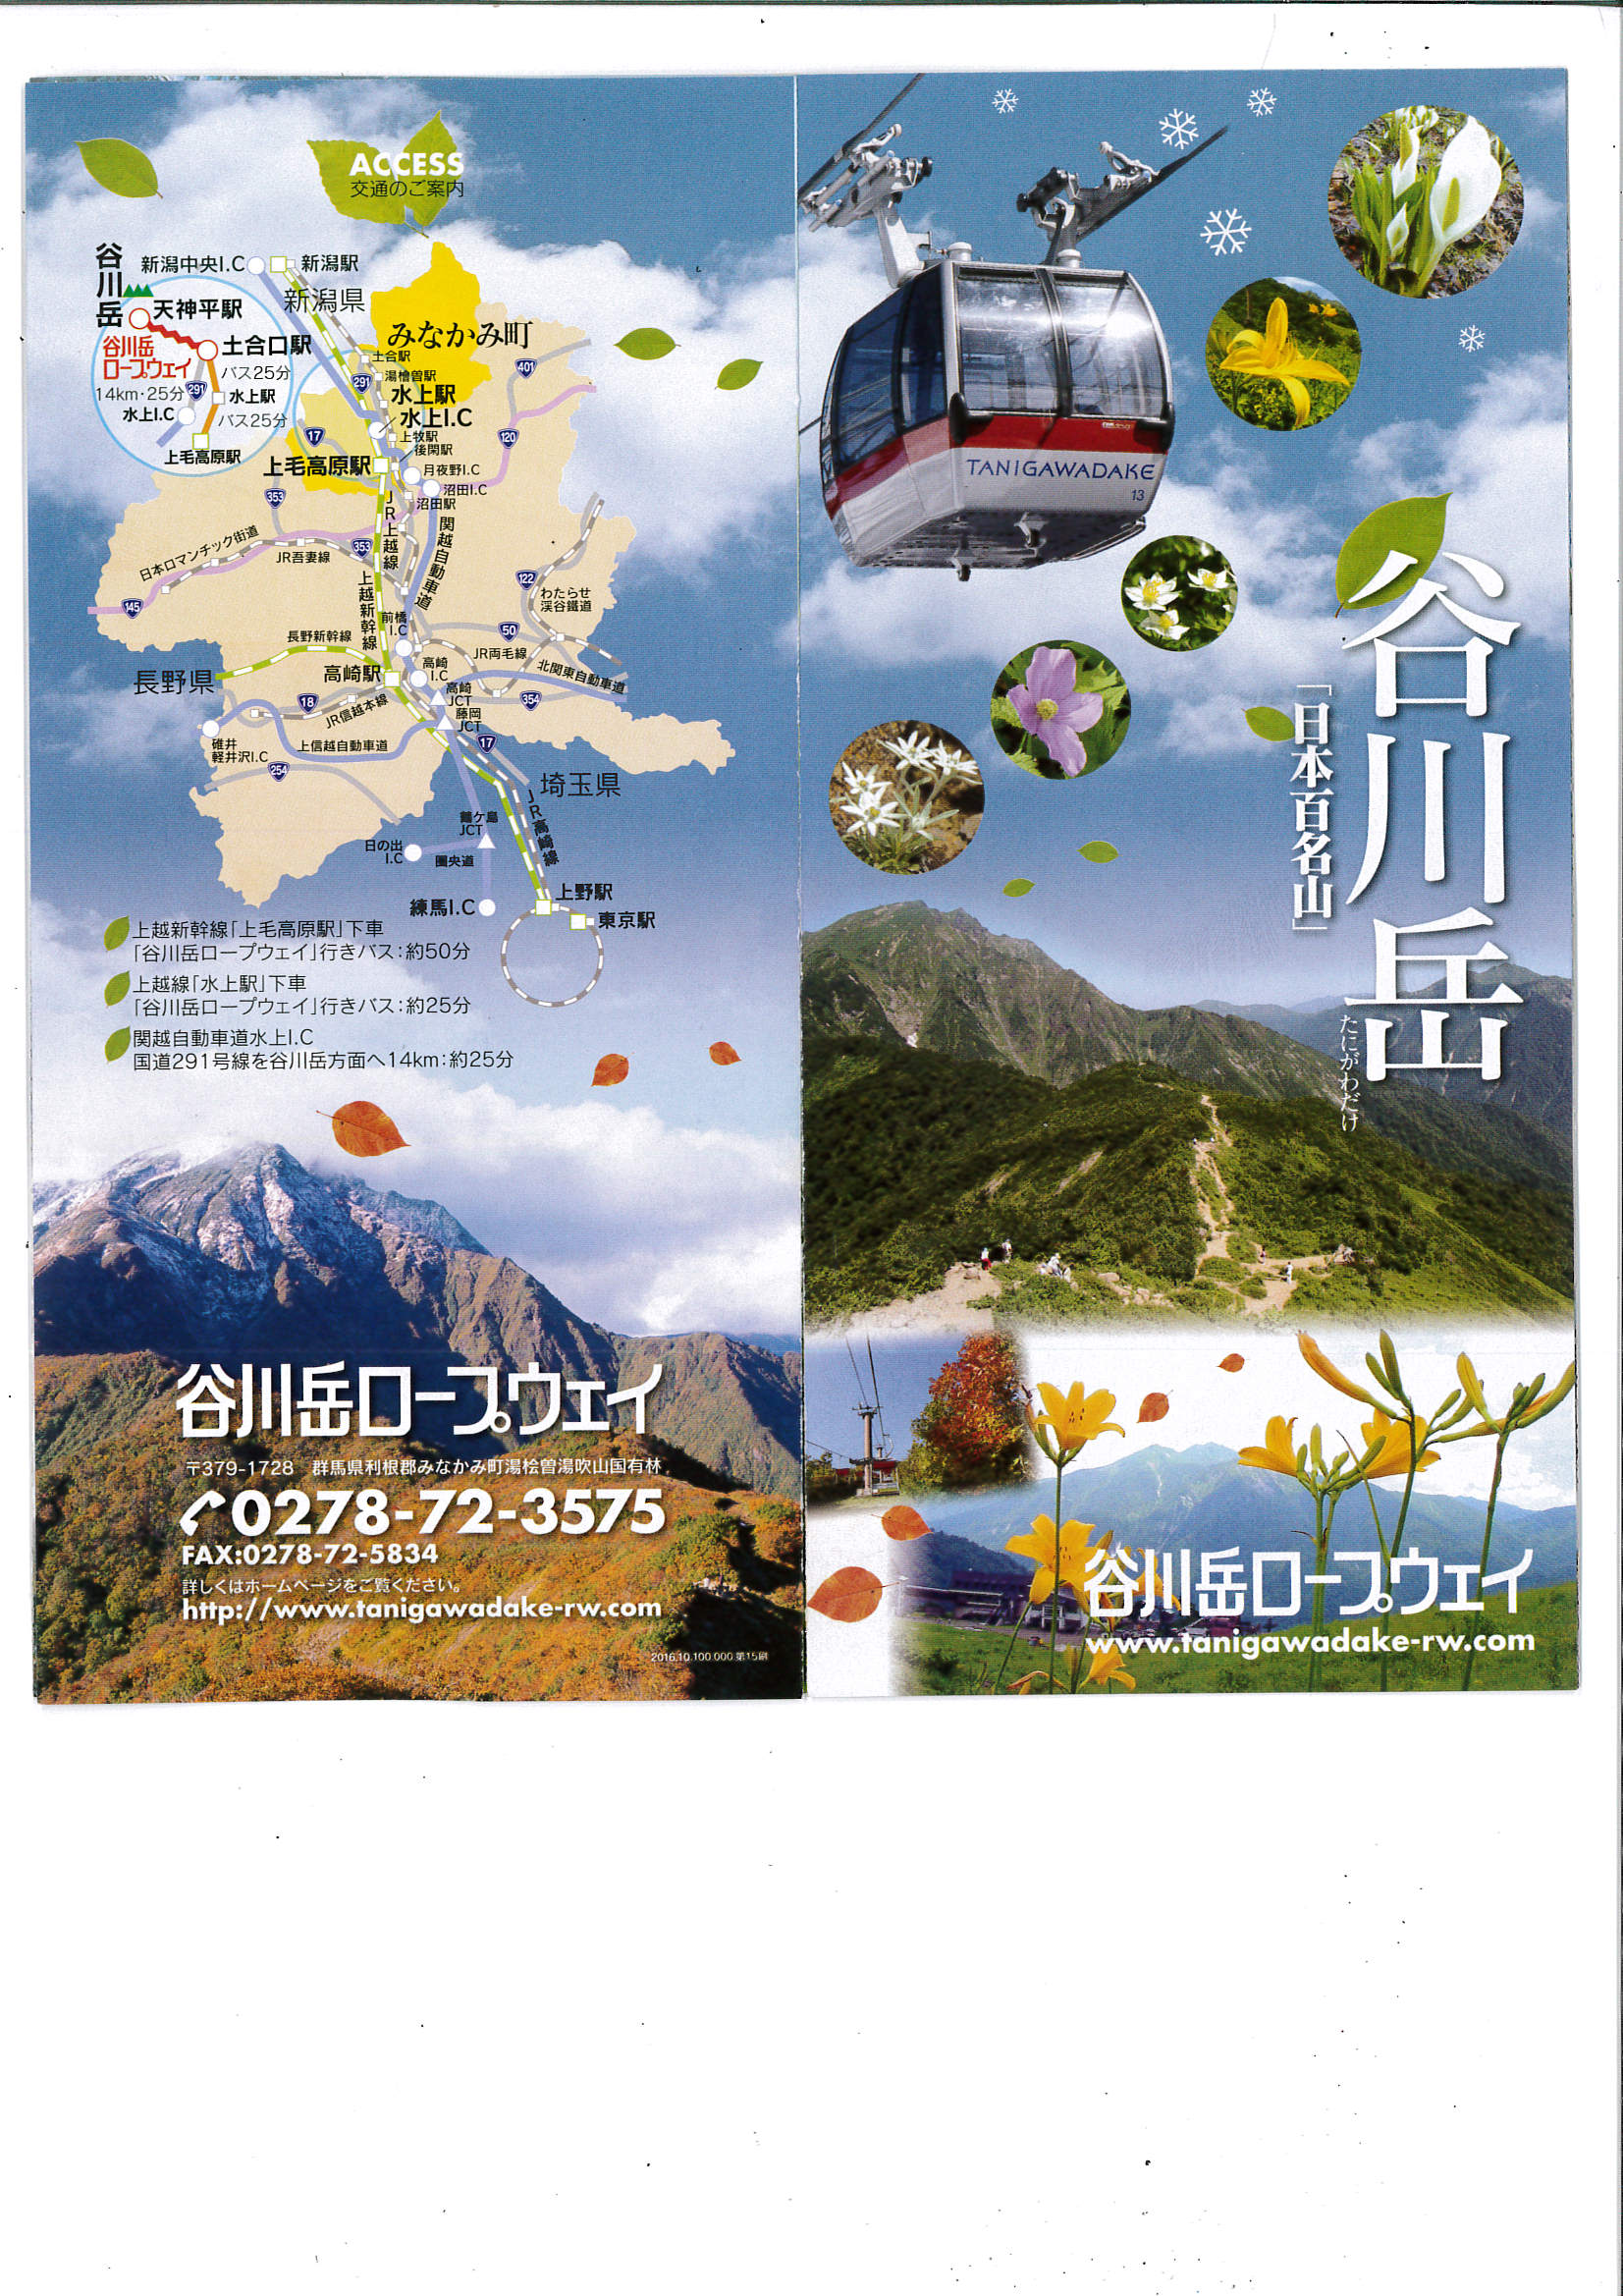 谷川岳天神平スキー場の営業終了と観光リフトの営業開始のお知らせ